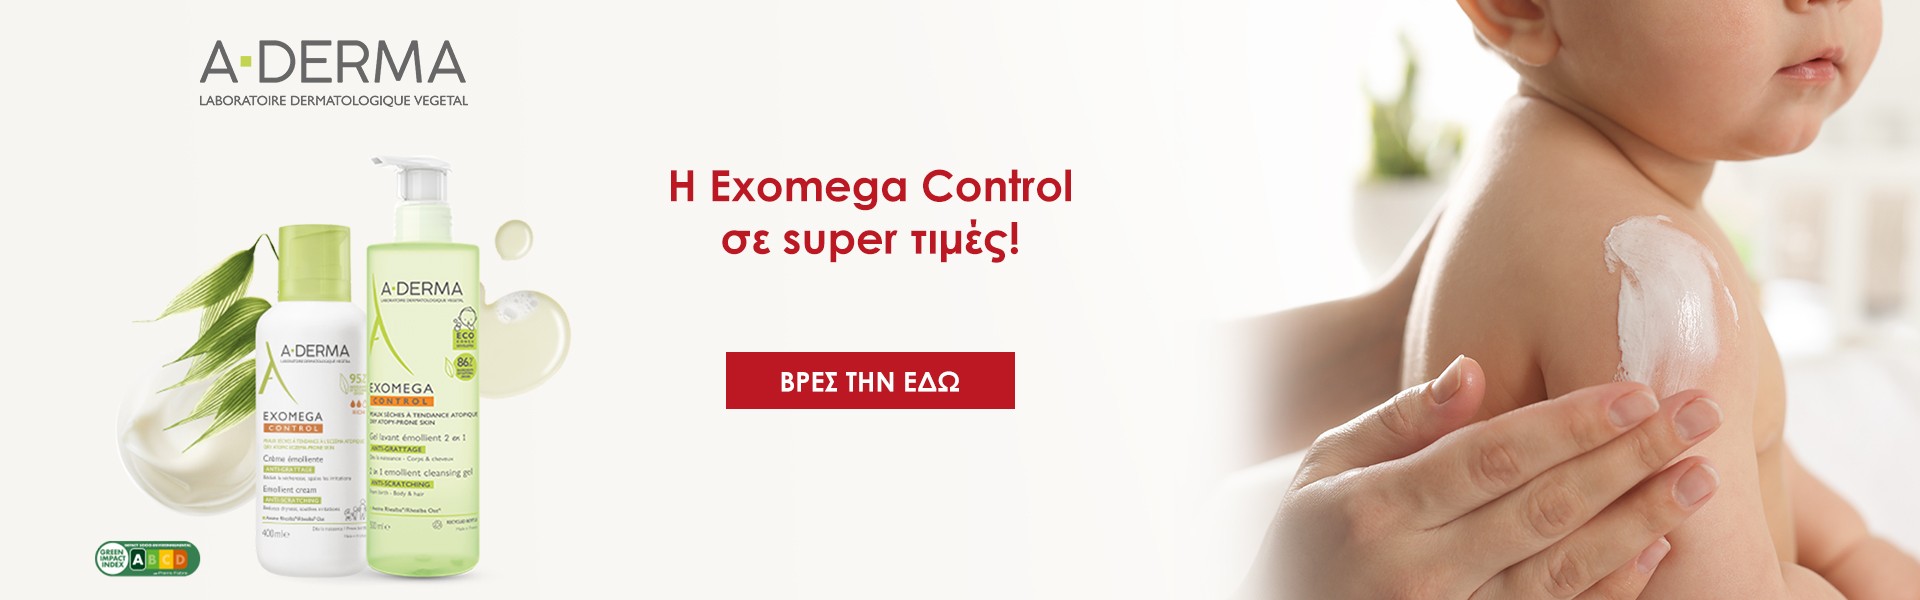 Η Exomega Control σε super τιμές!